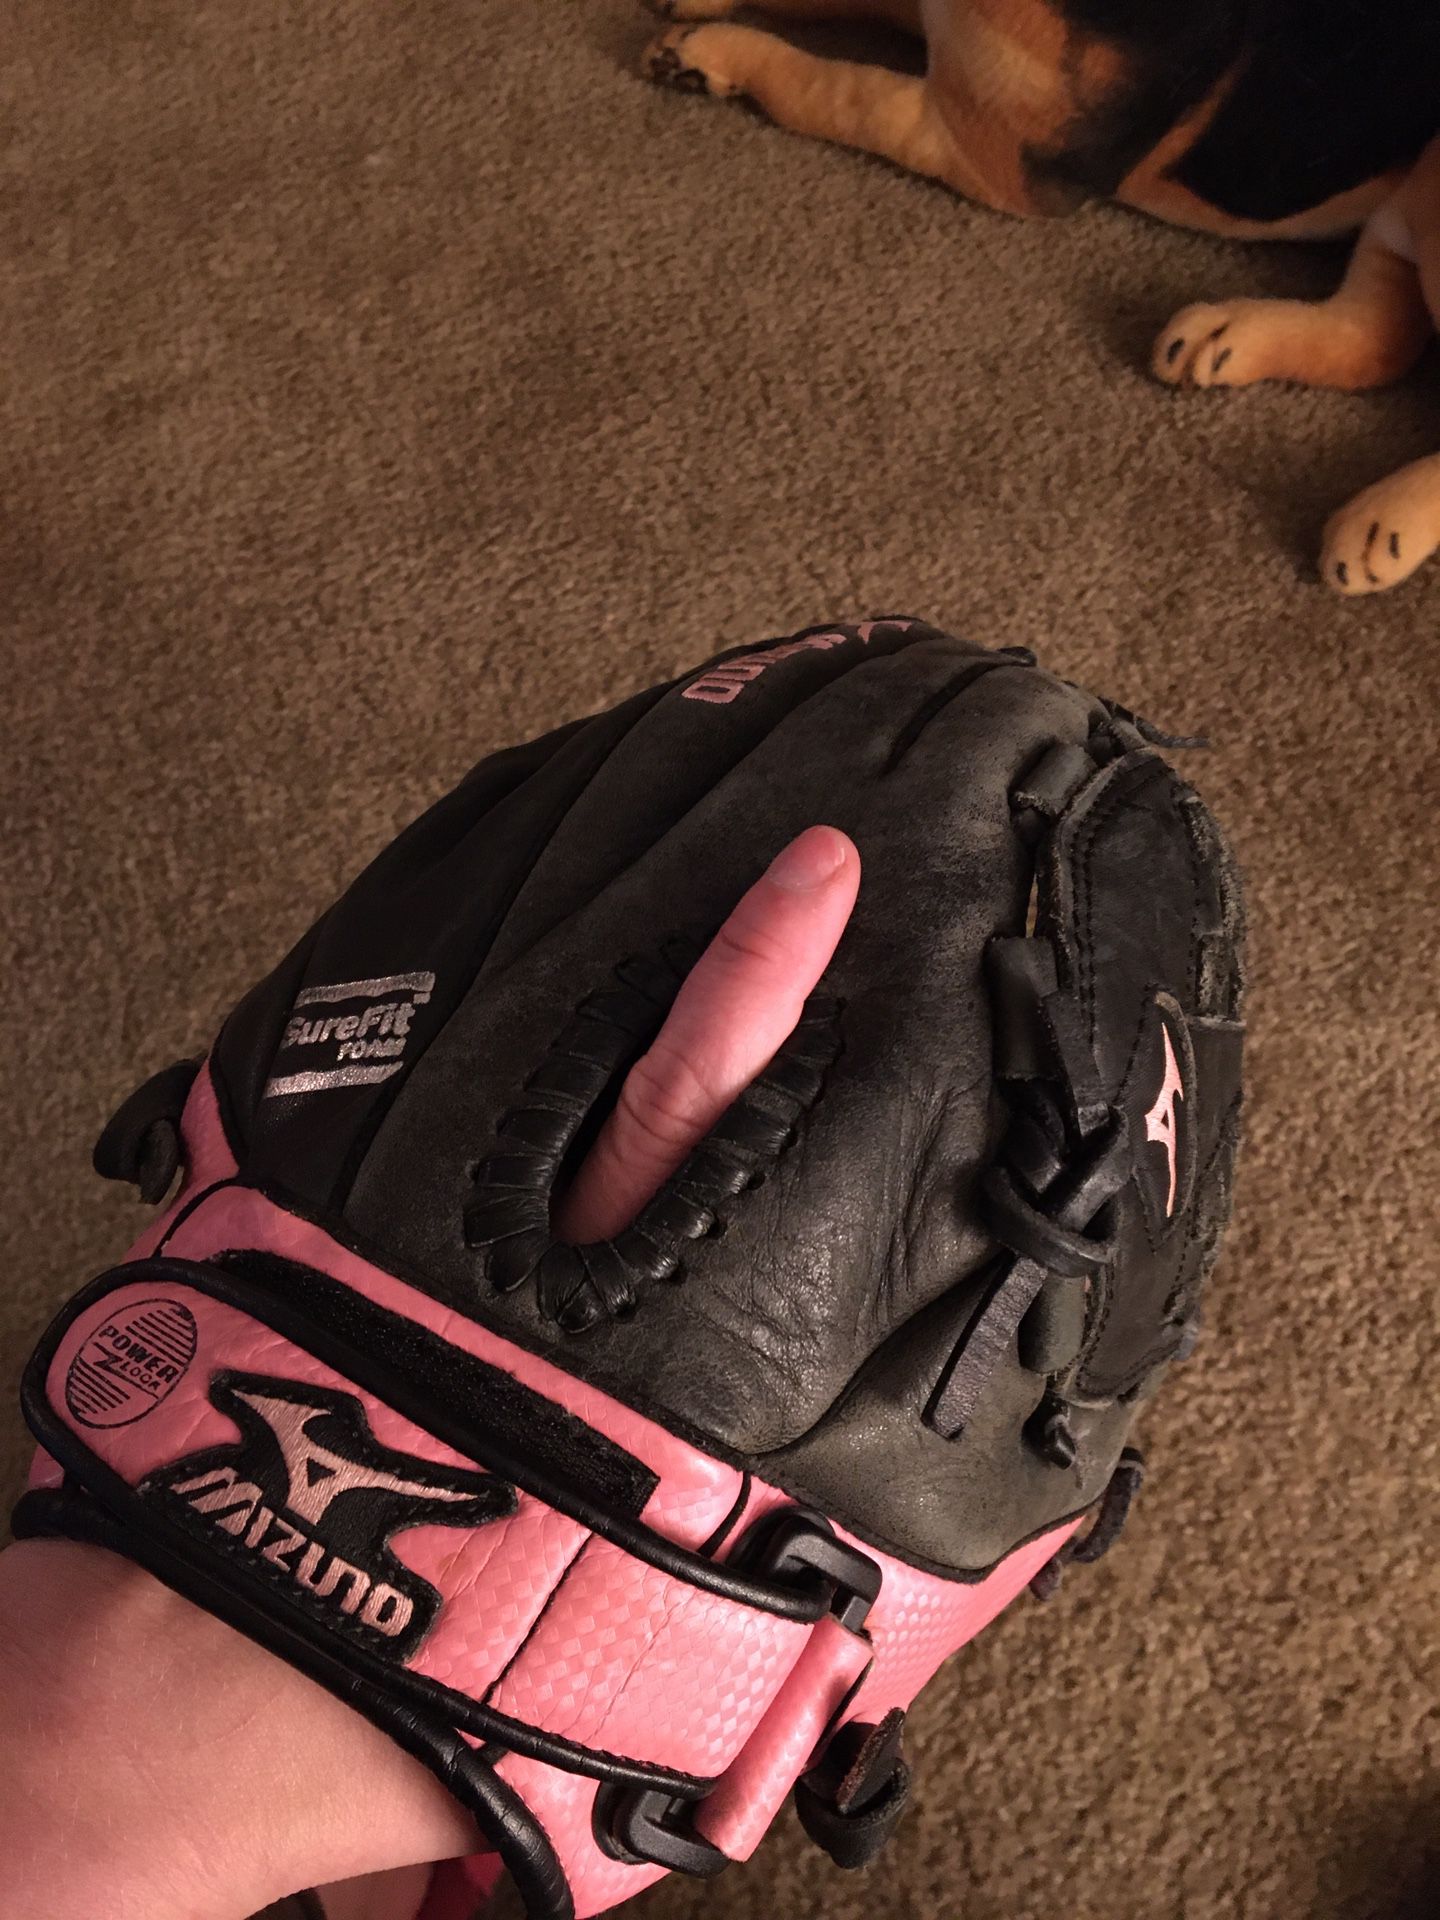 Women’s mazuno pink and black softball glove